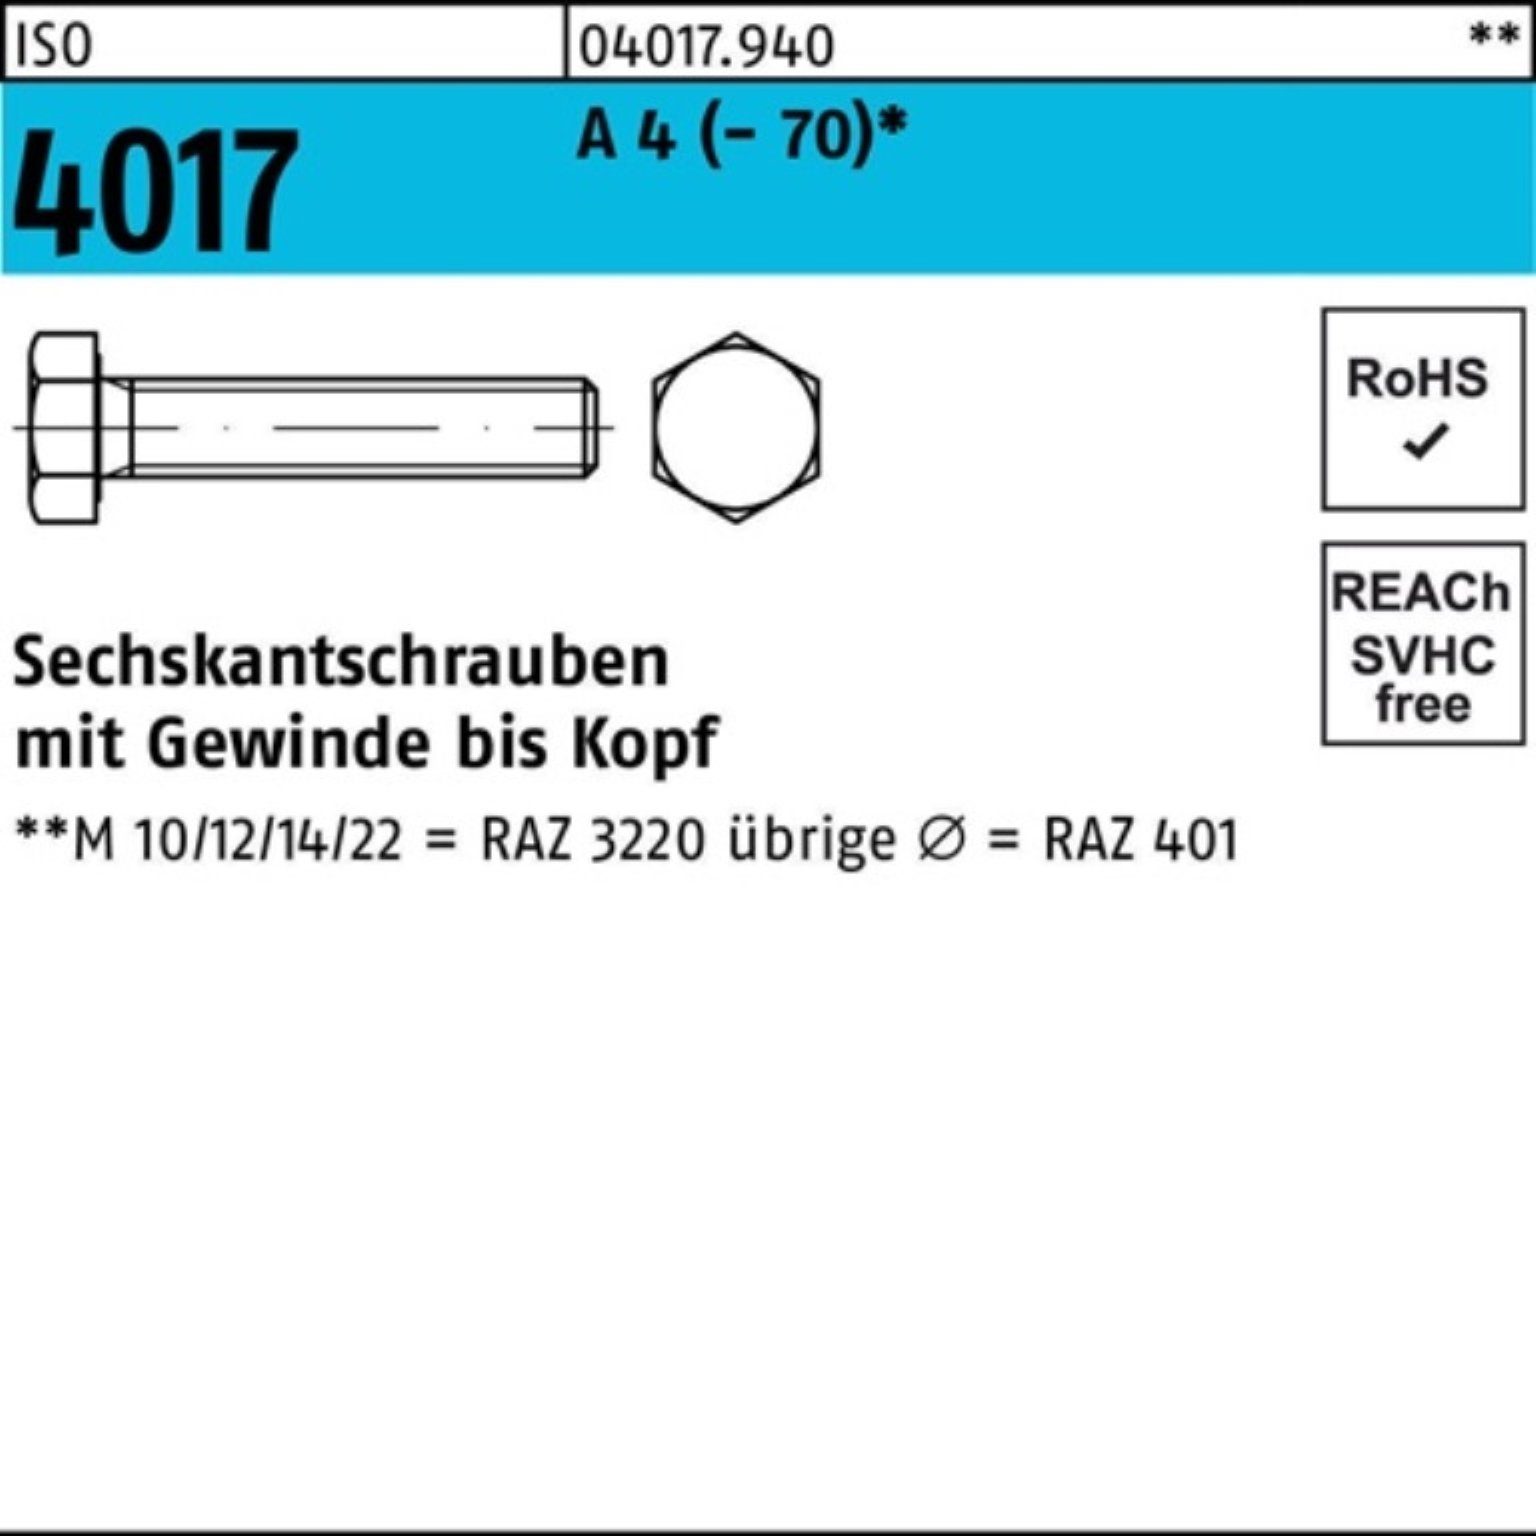 Bufab Sechskantschraube 100er Pack Sechskantschraube ISO 4017 VG M8x 90 A 4 (70) 50 Stück I